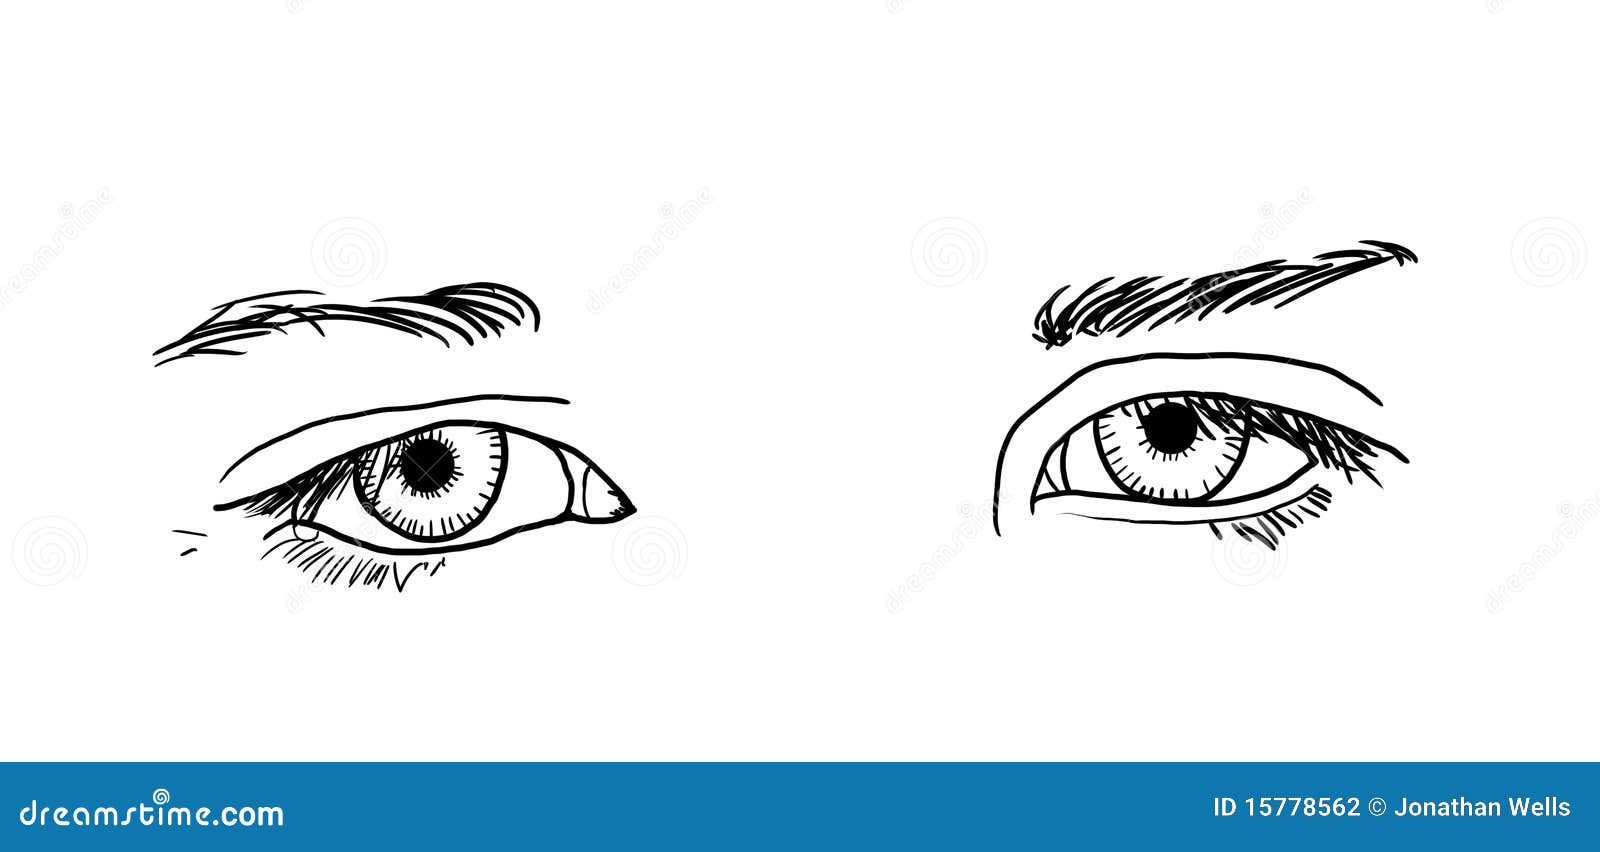 Sad Eyes stock illustration. Illustration of isolated - 15778562